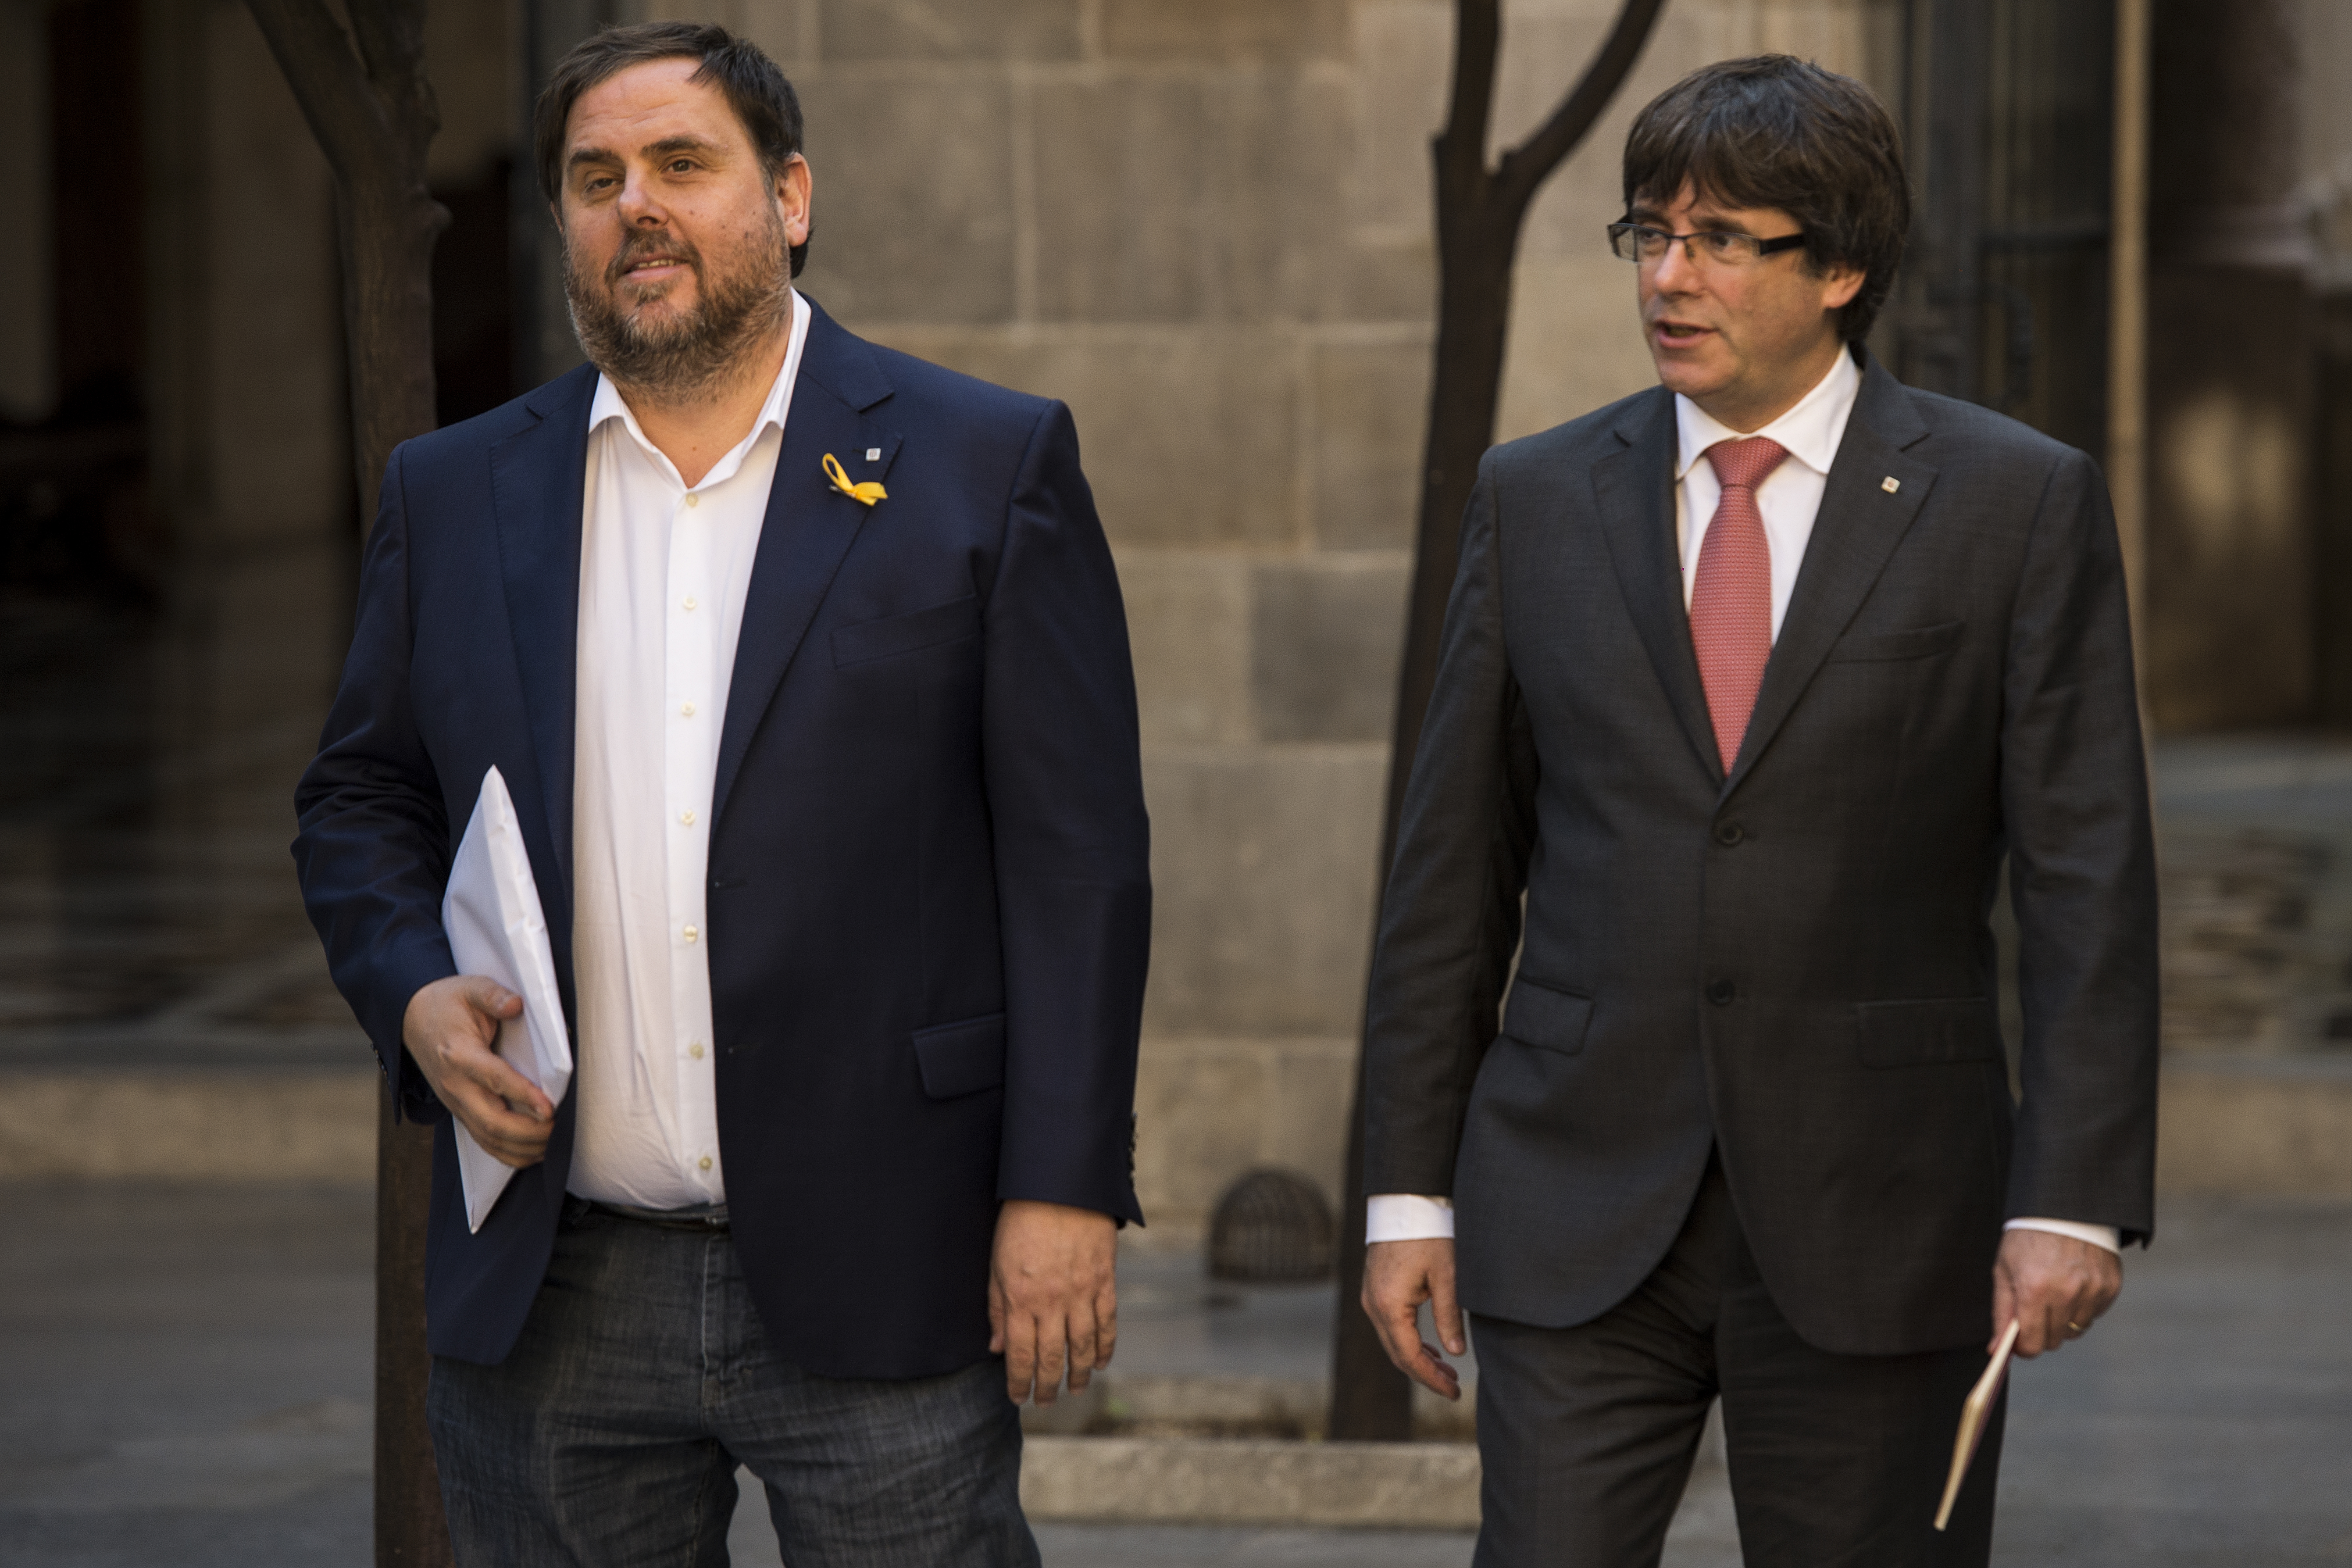 25 éves börtönt kért az ügyészség a volt katalán elnökhelyettesnek